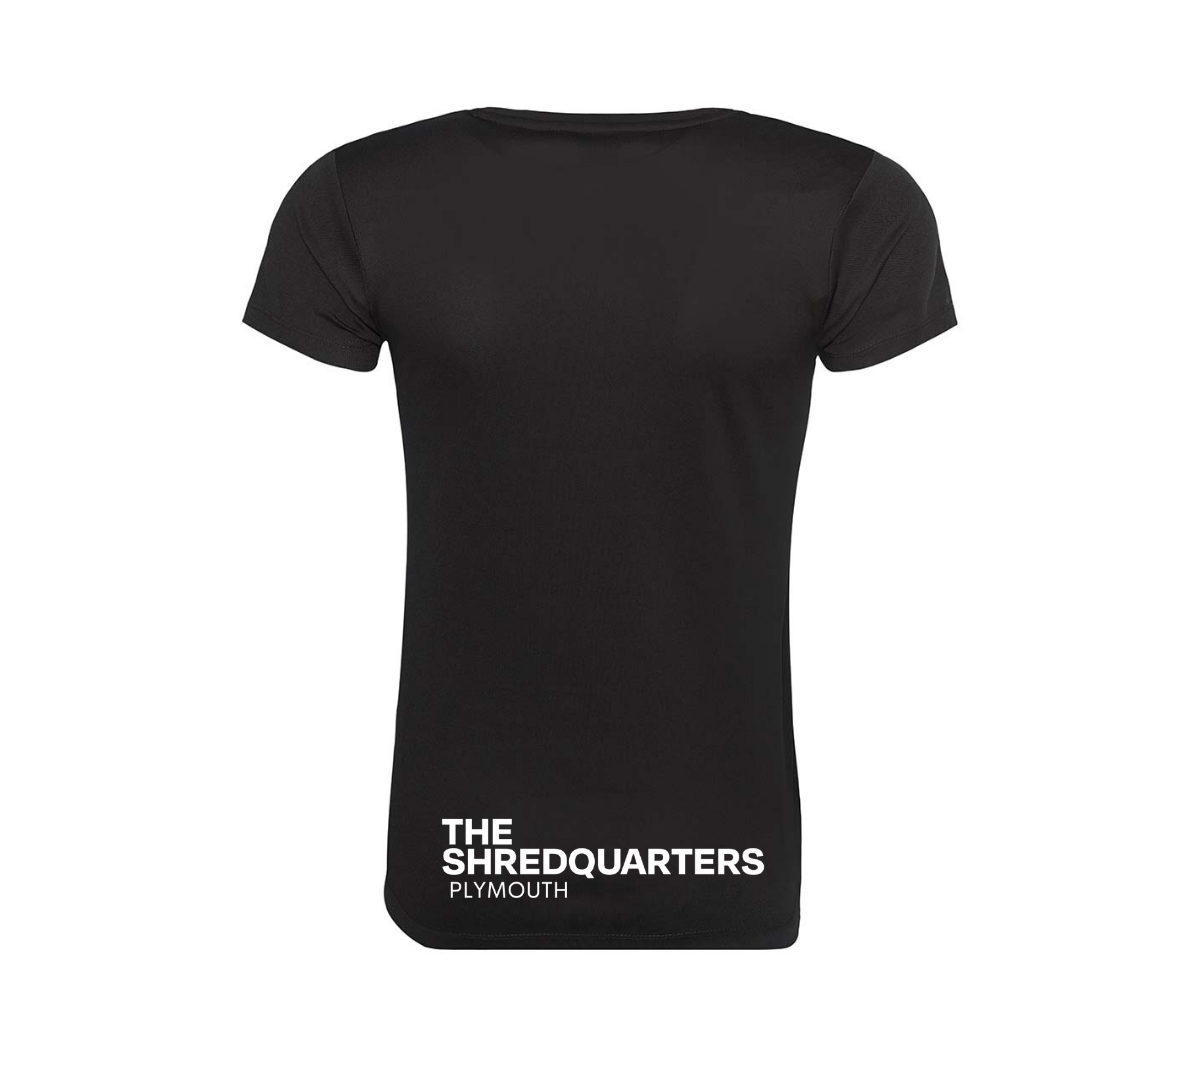 The Shredquarters Plymouth Ladies Training T-Shirts